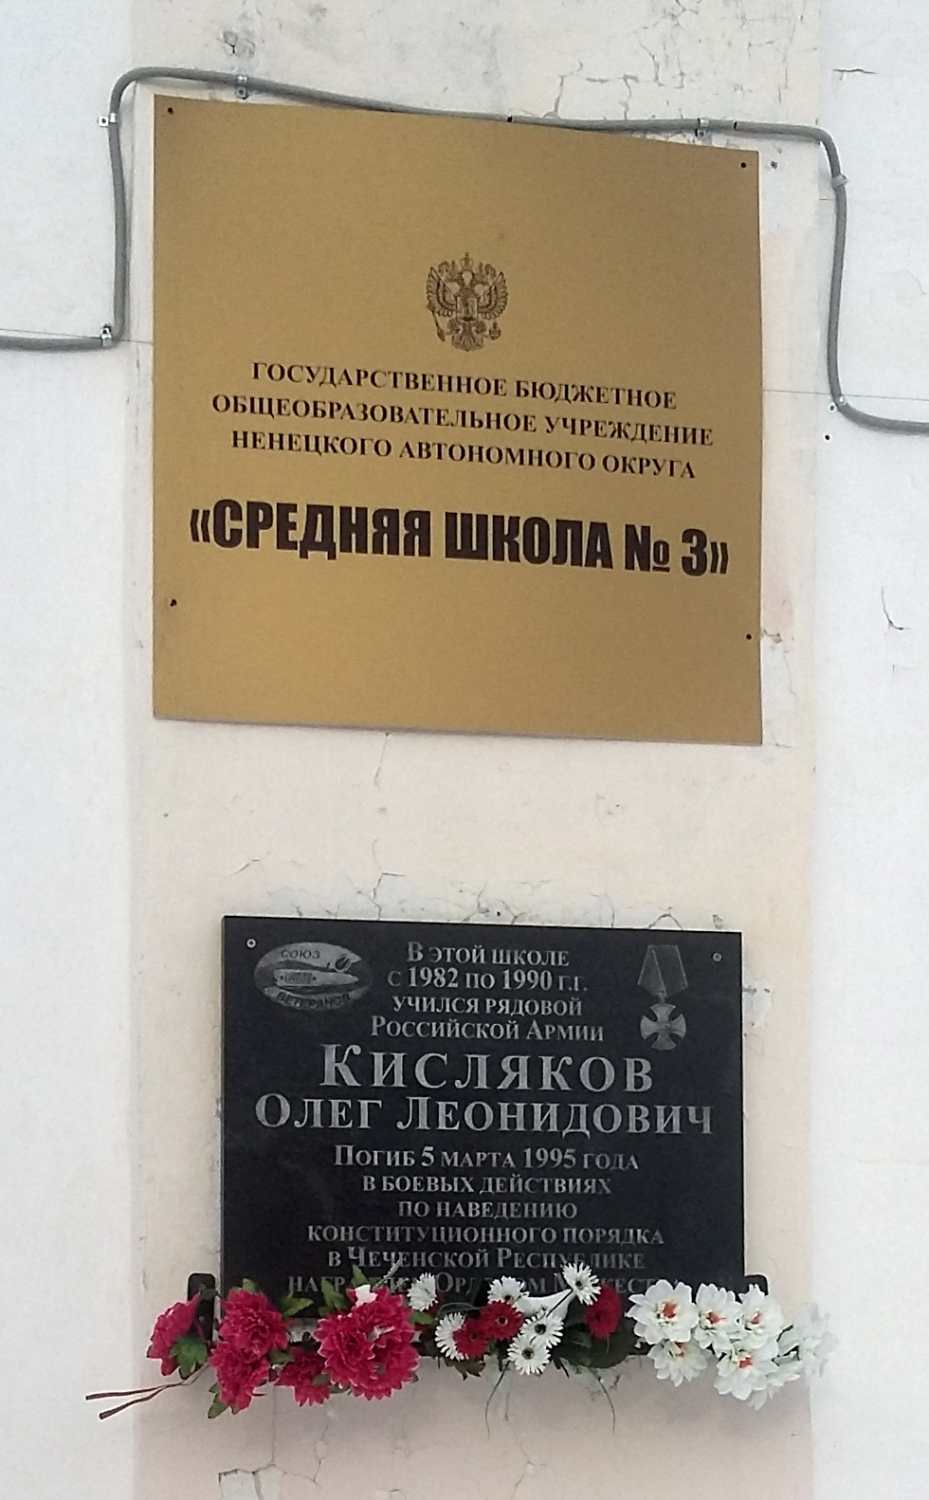 Naryan-Mar, Улица Ленина, 25. Naryan-Mar — Memorial plaques